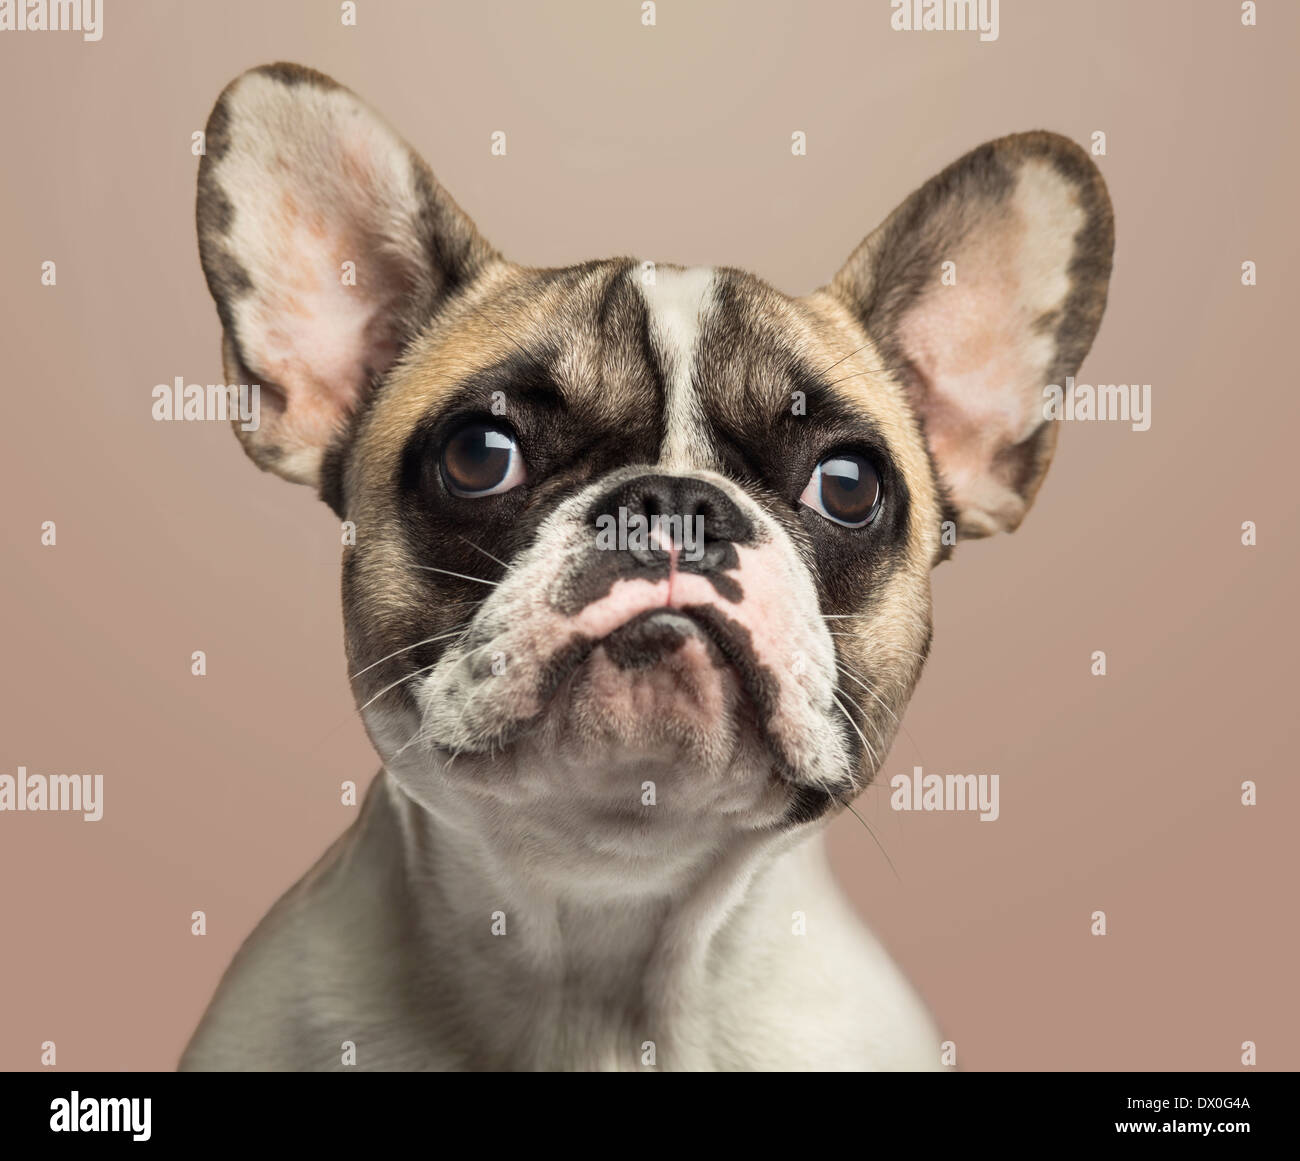 Eine französische Bulldogge auf Beige Hintergrund in Nahaufnahme Stockfoto